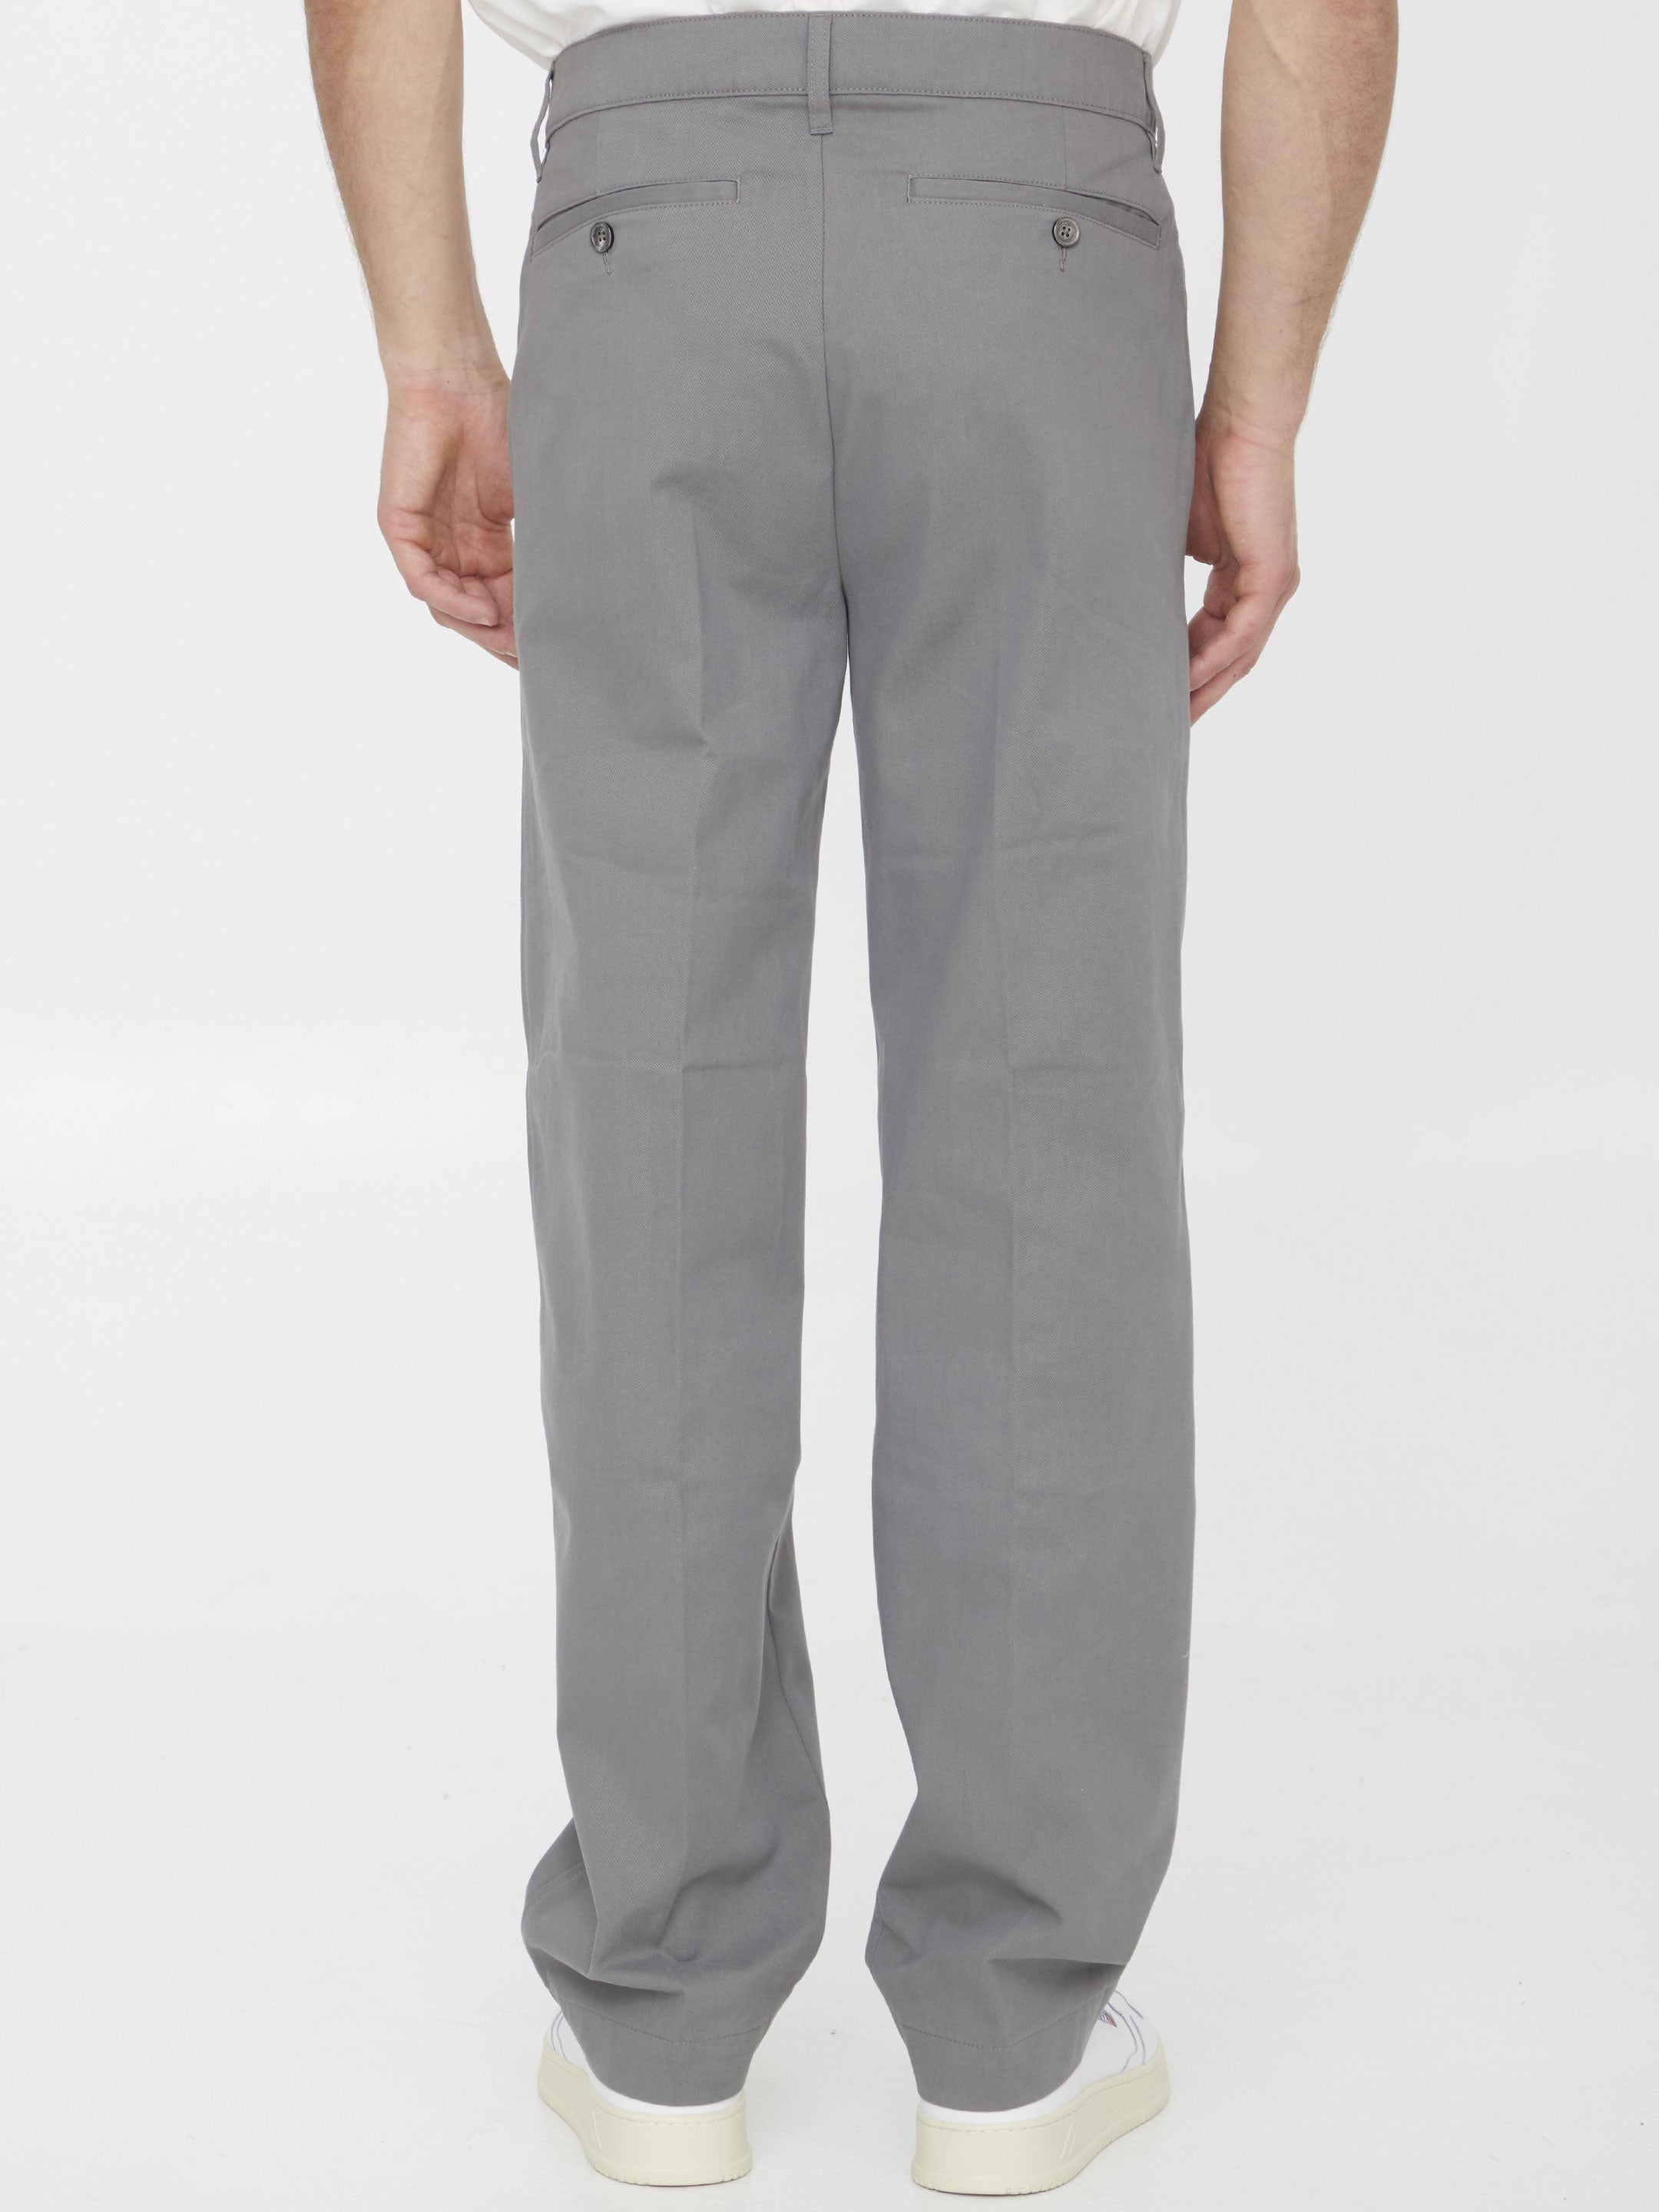 Grey chino pants